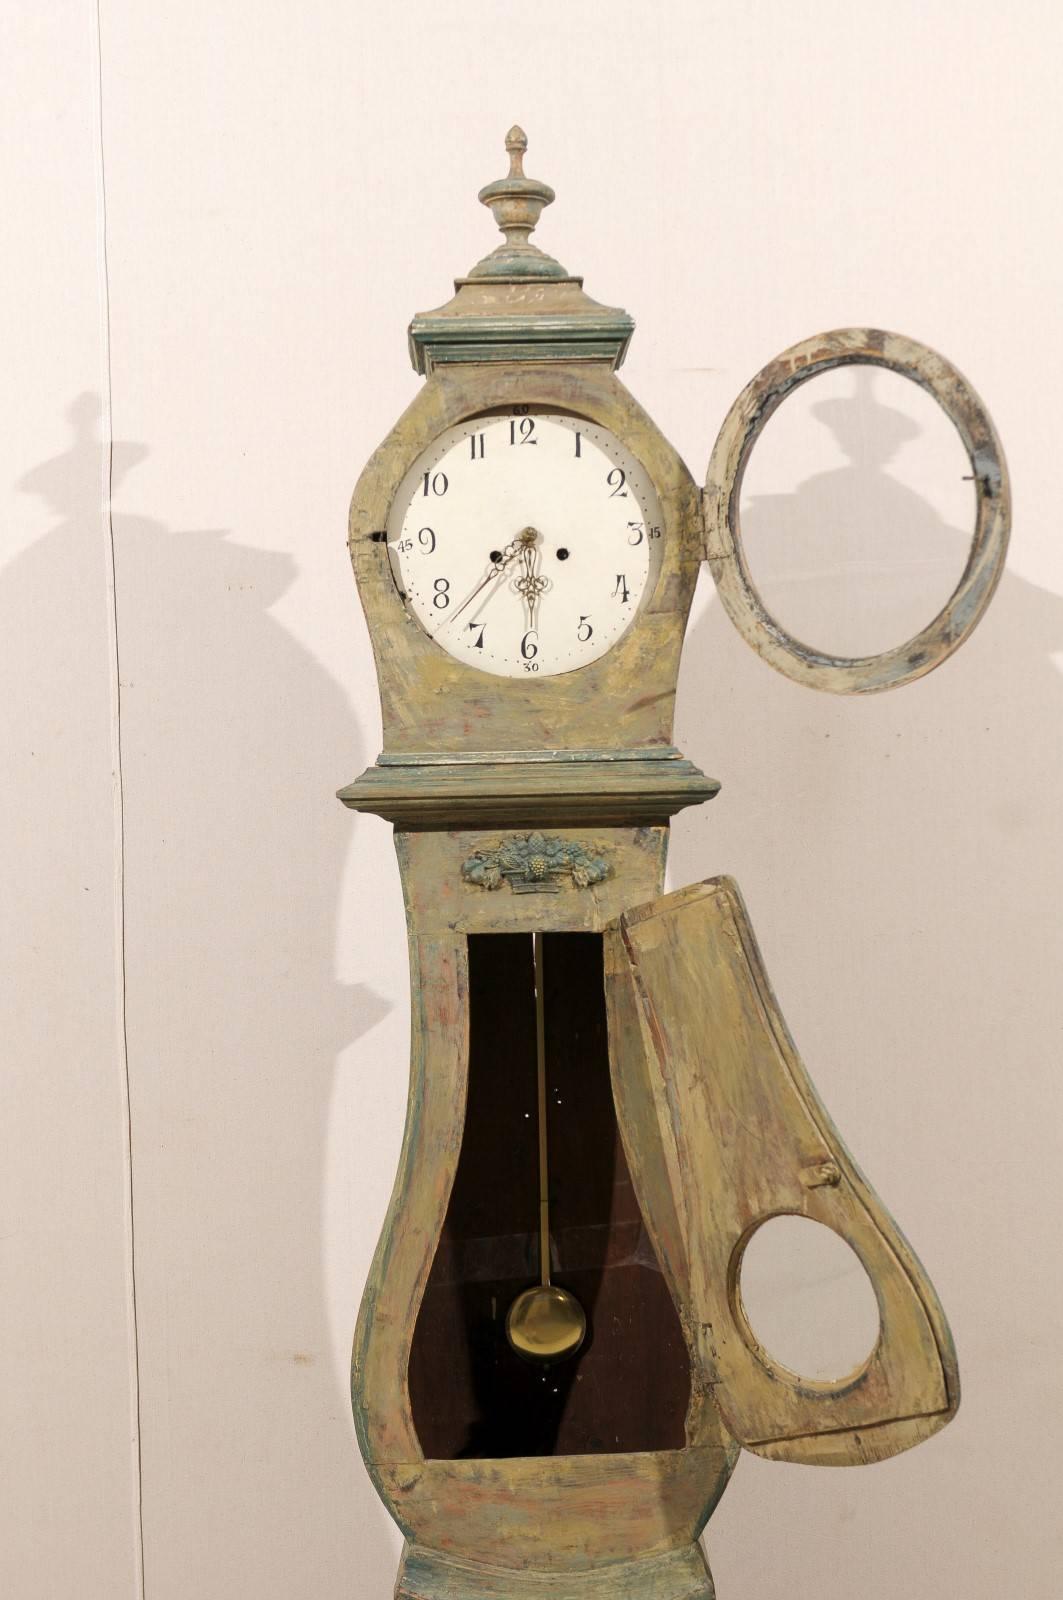 Une horloge suédoise du 19ème siècle. Cette horloge en bois peint présente un cimier joliment sculpté avec une urne en son centre. Le col est décoré d'un motif exquis de panier de fruits en son centre. Cette horloge a conservé sa face métallique,